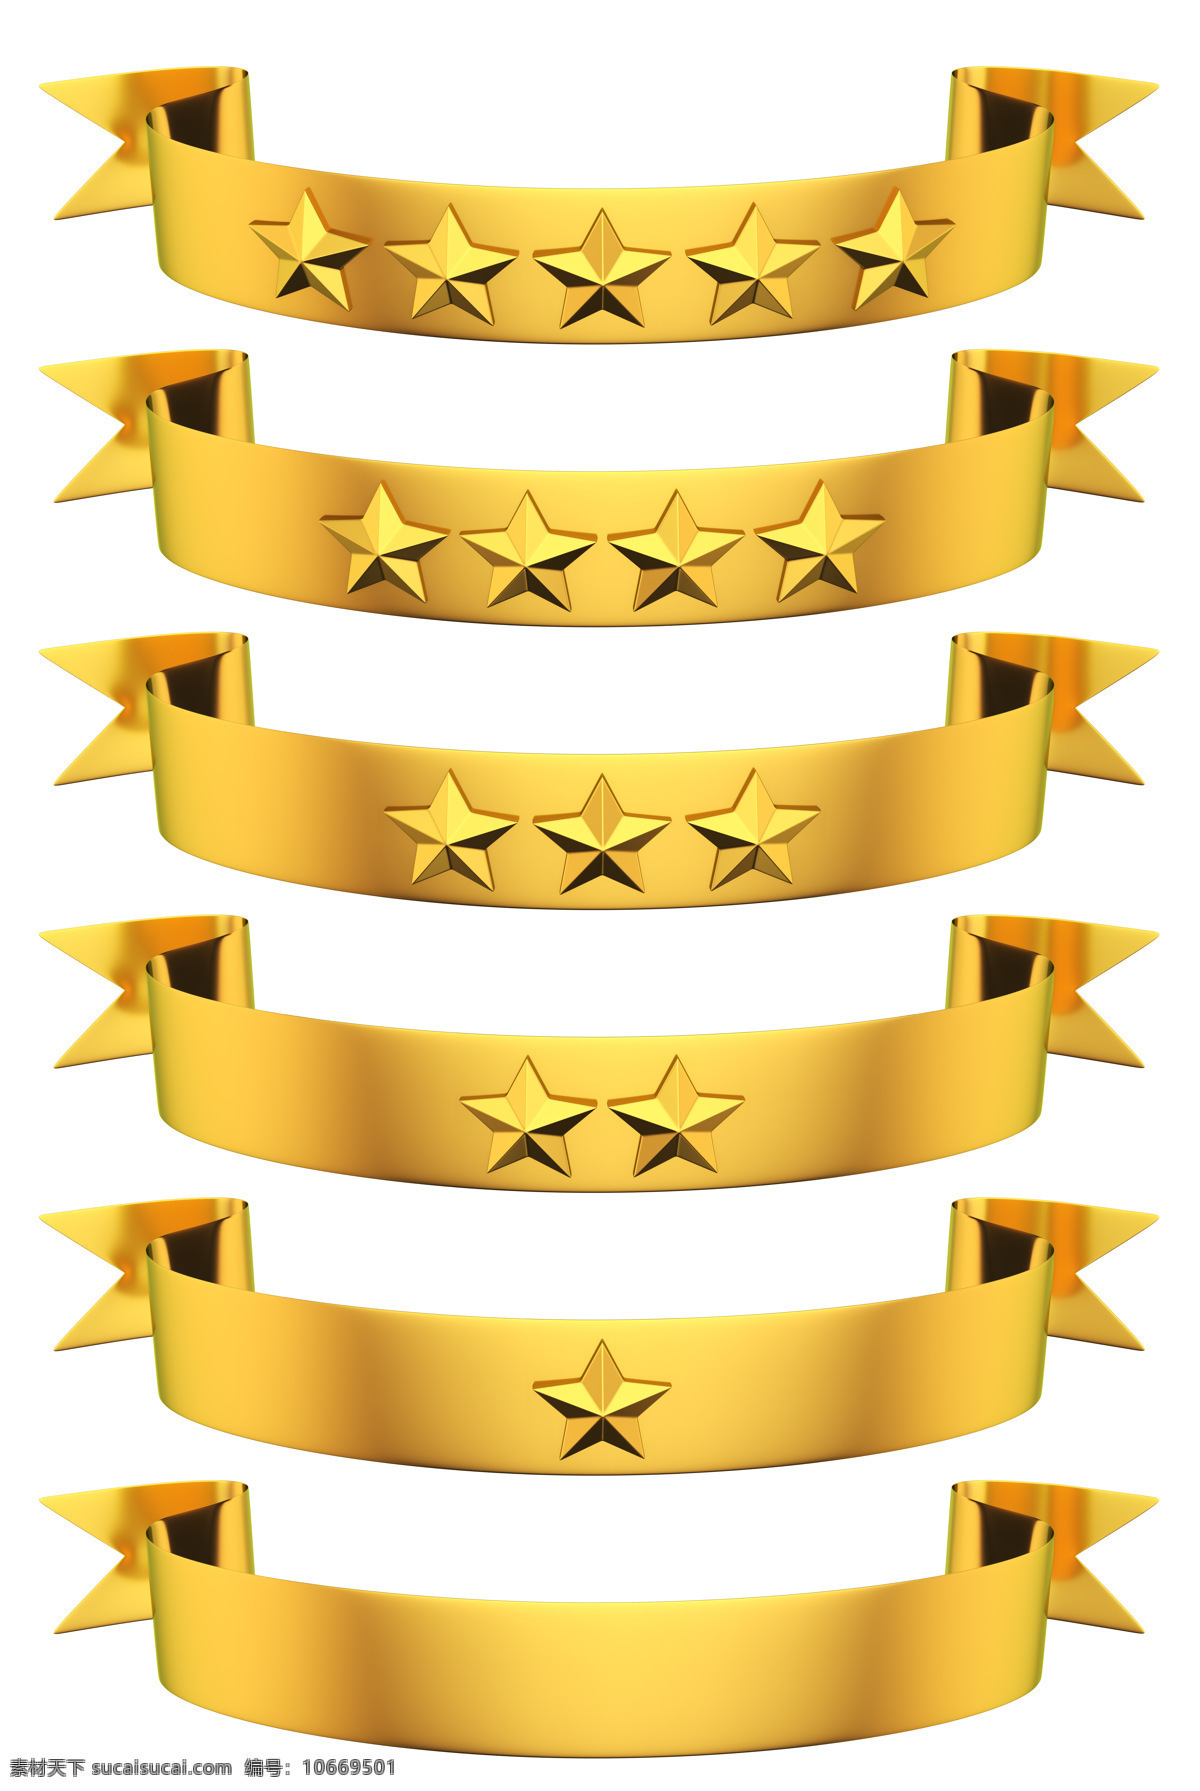 金色 金属 绶带 五角星 徽章 3d 标志 立体 其他类别 生活百科